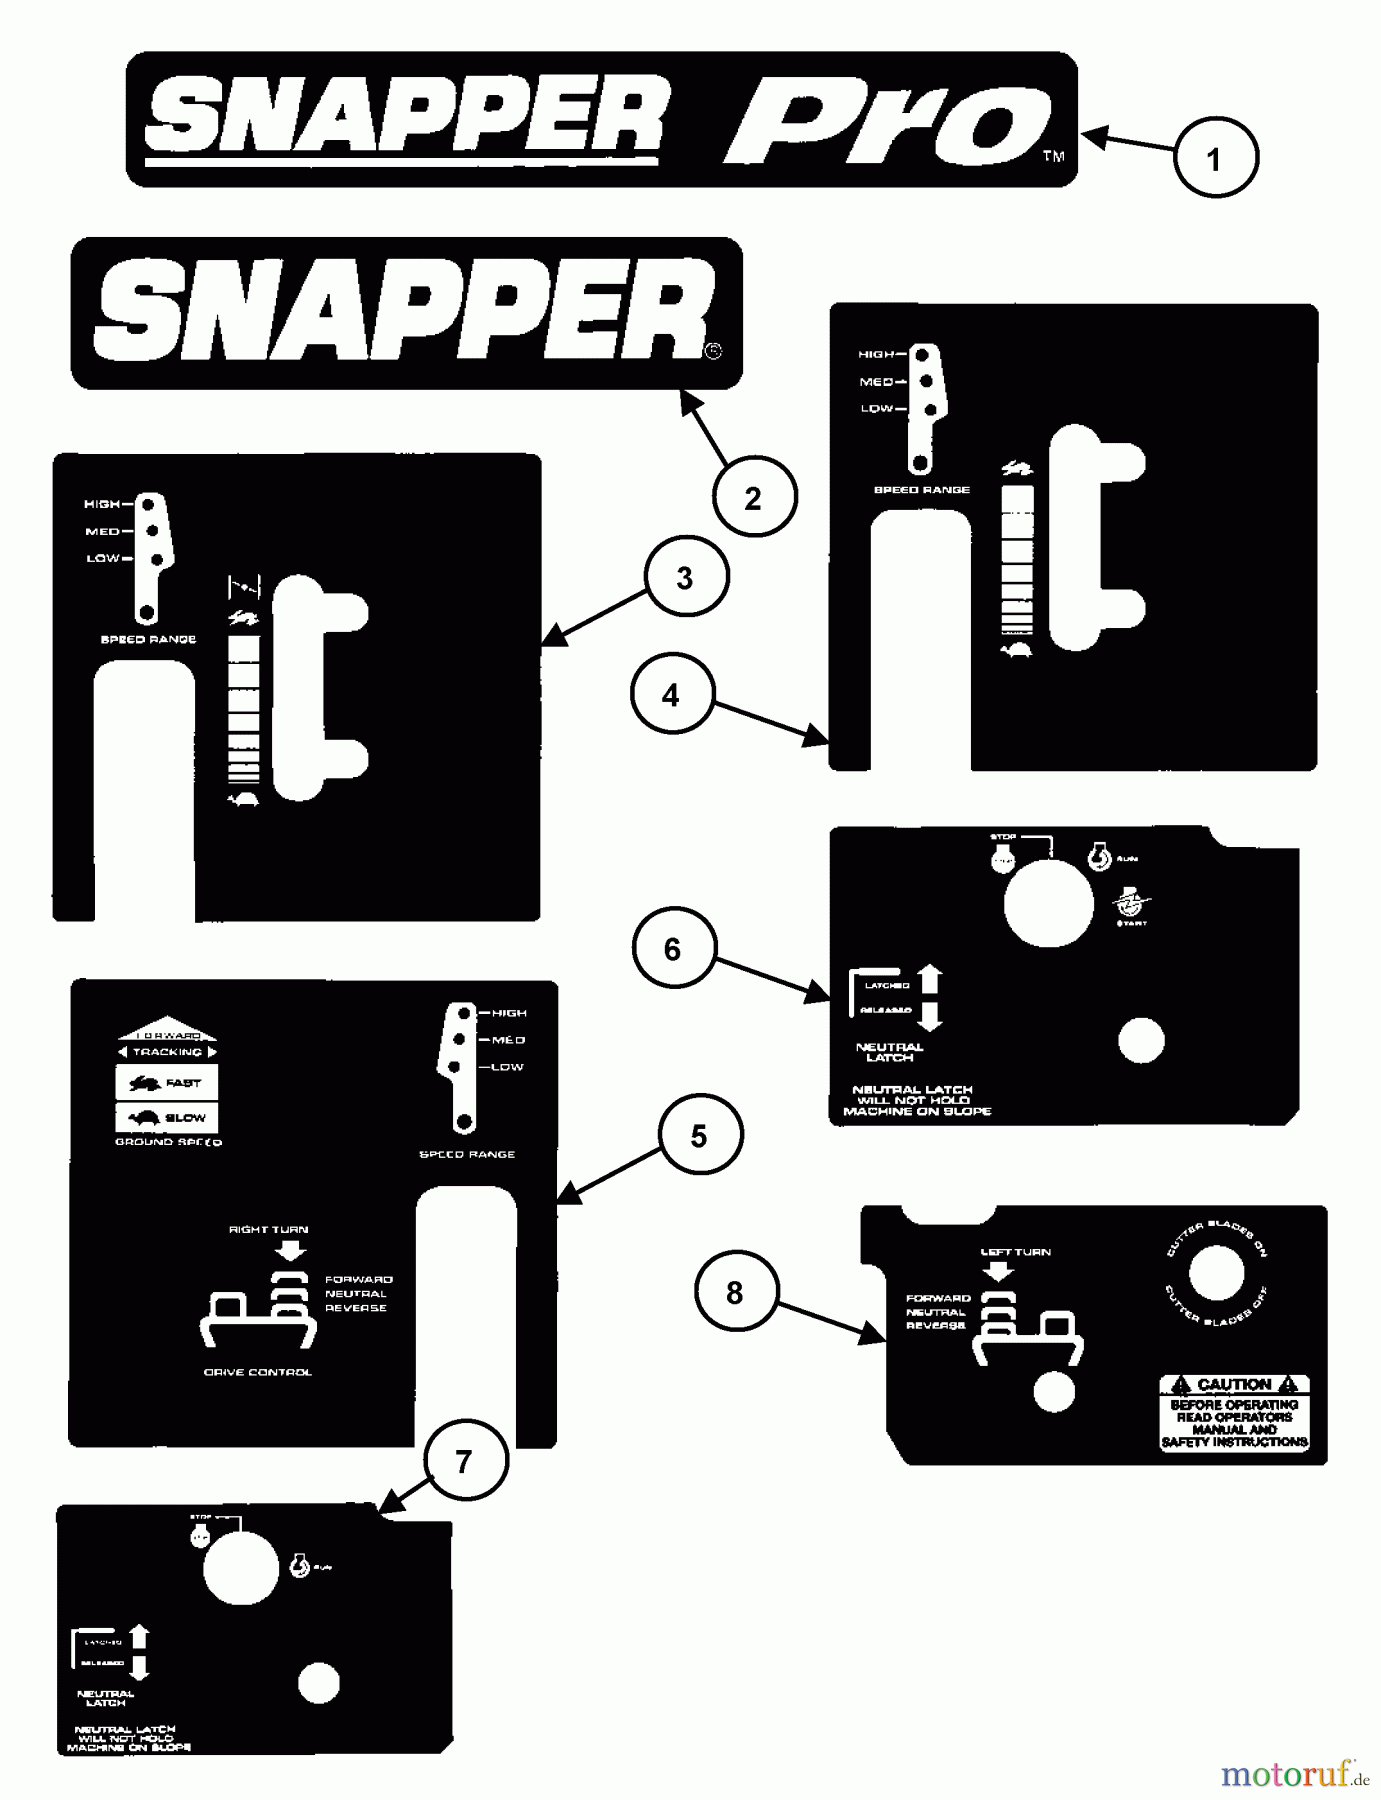  Snapper Rasenmäher für Großflächen SPLH160BV (80914) - Snapper Wide-Area Walk-Behind Mower, 16 HP, Hydro Drive, Loop Handle, Series 0 Decals (Part 2)